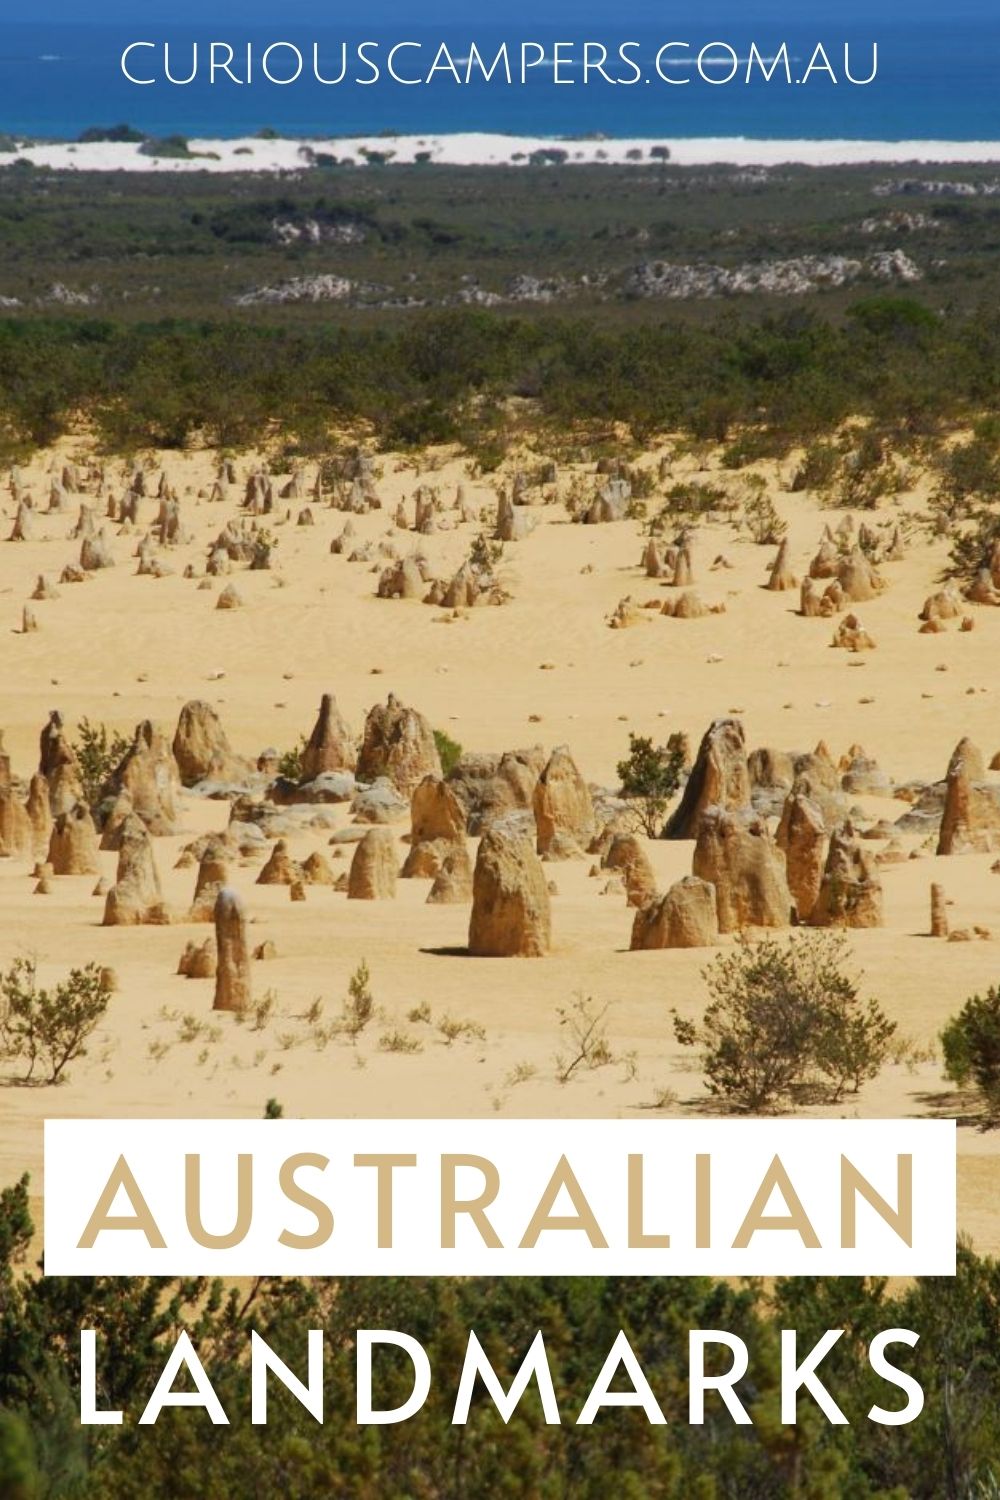 Natural Australian Landmarks